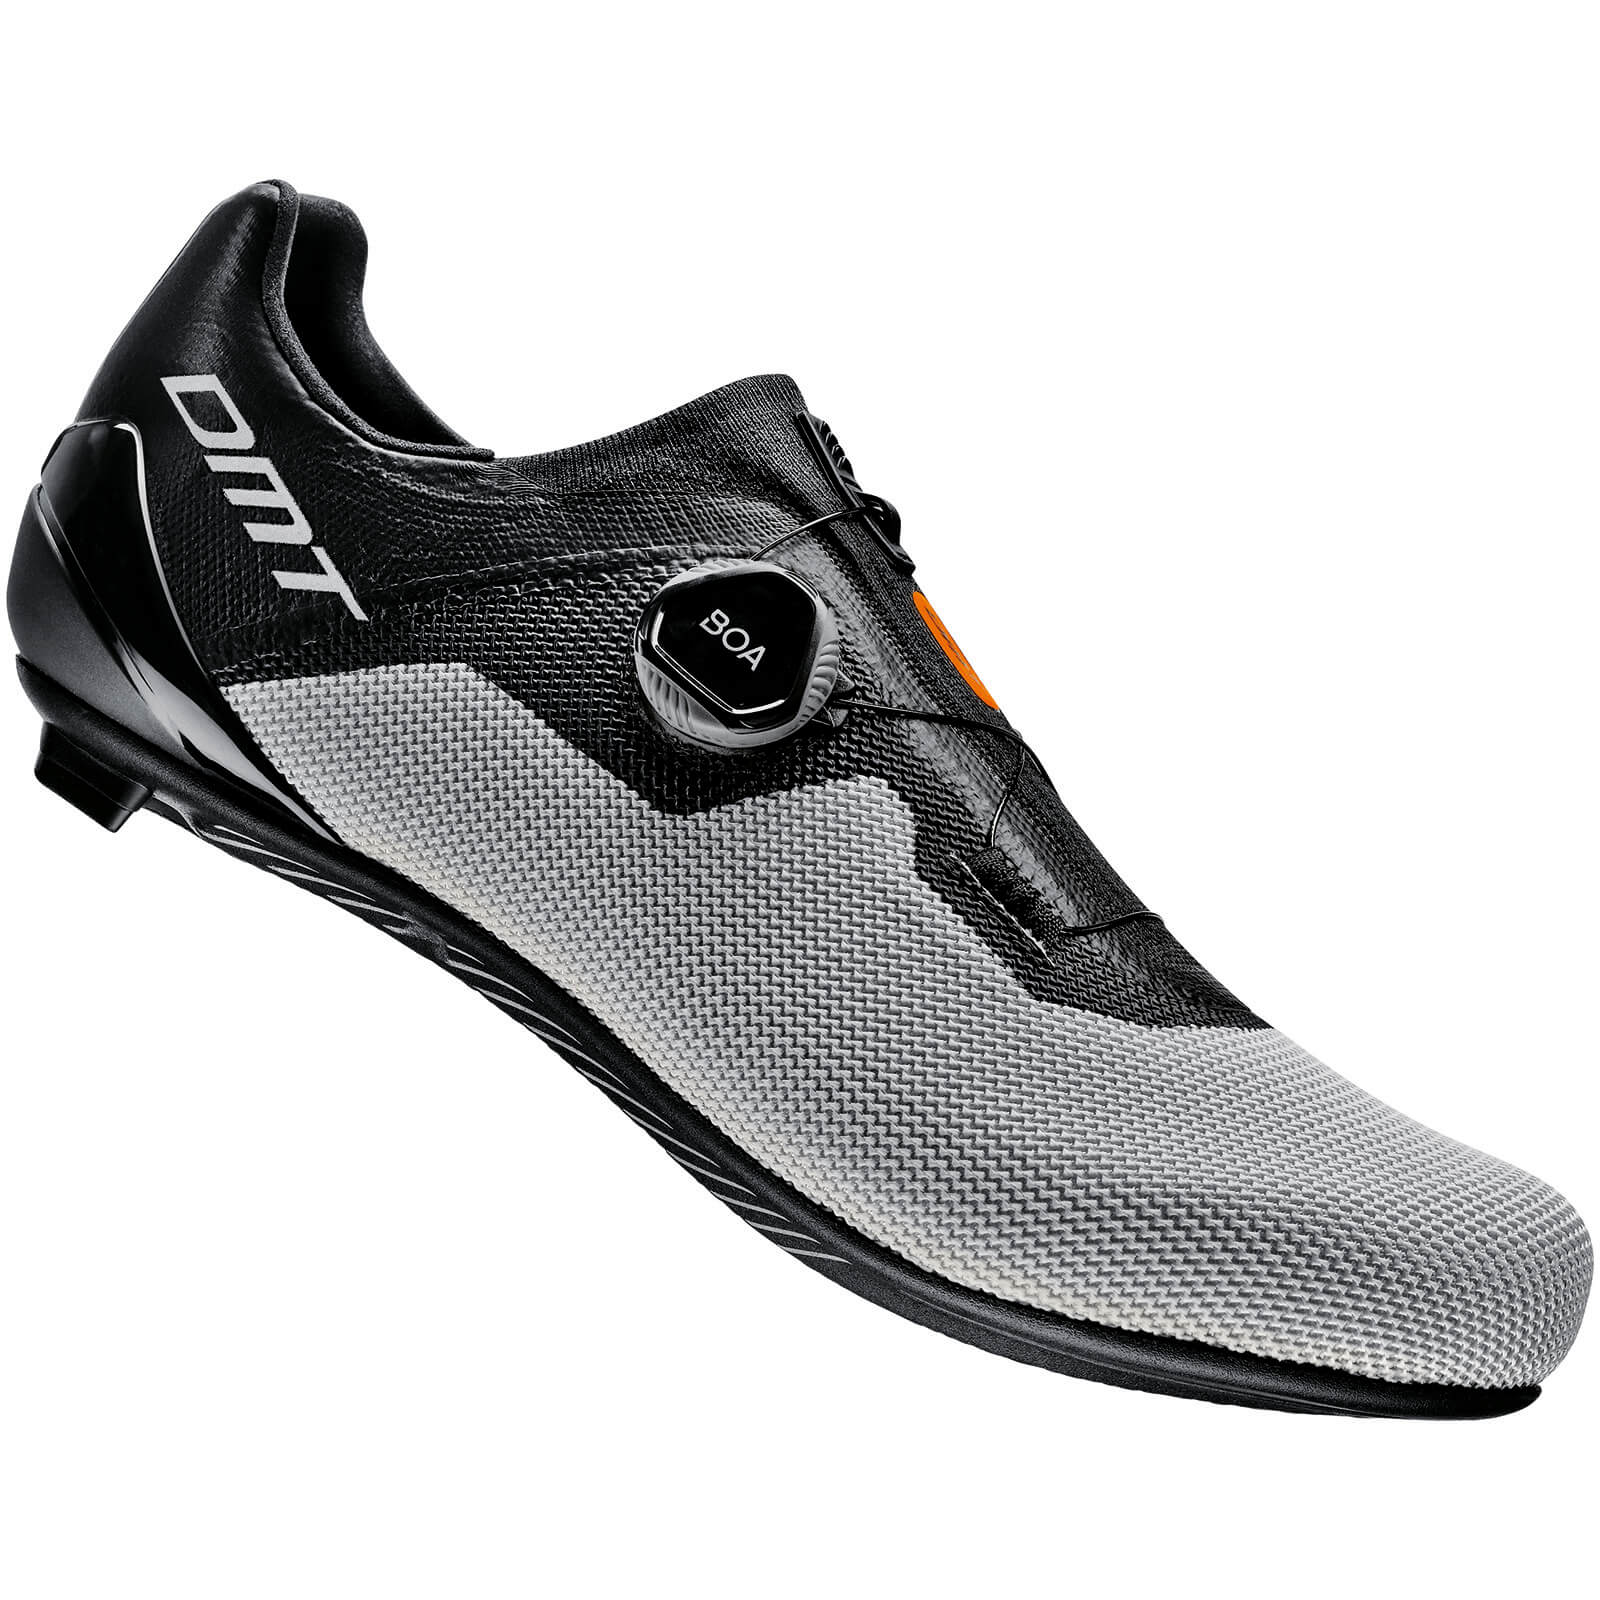 DMT KR4 Road Shoes - EU 45 - Black/Silver